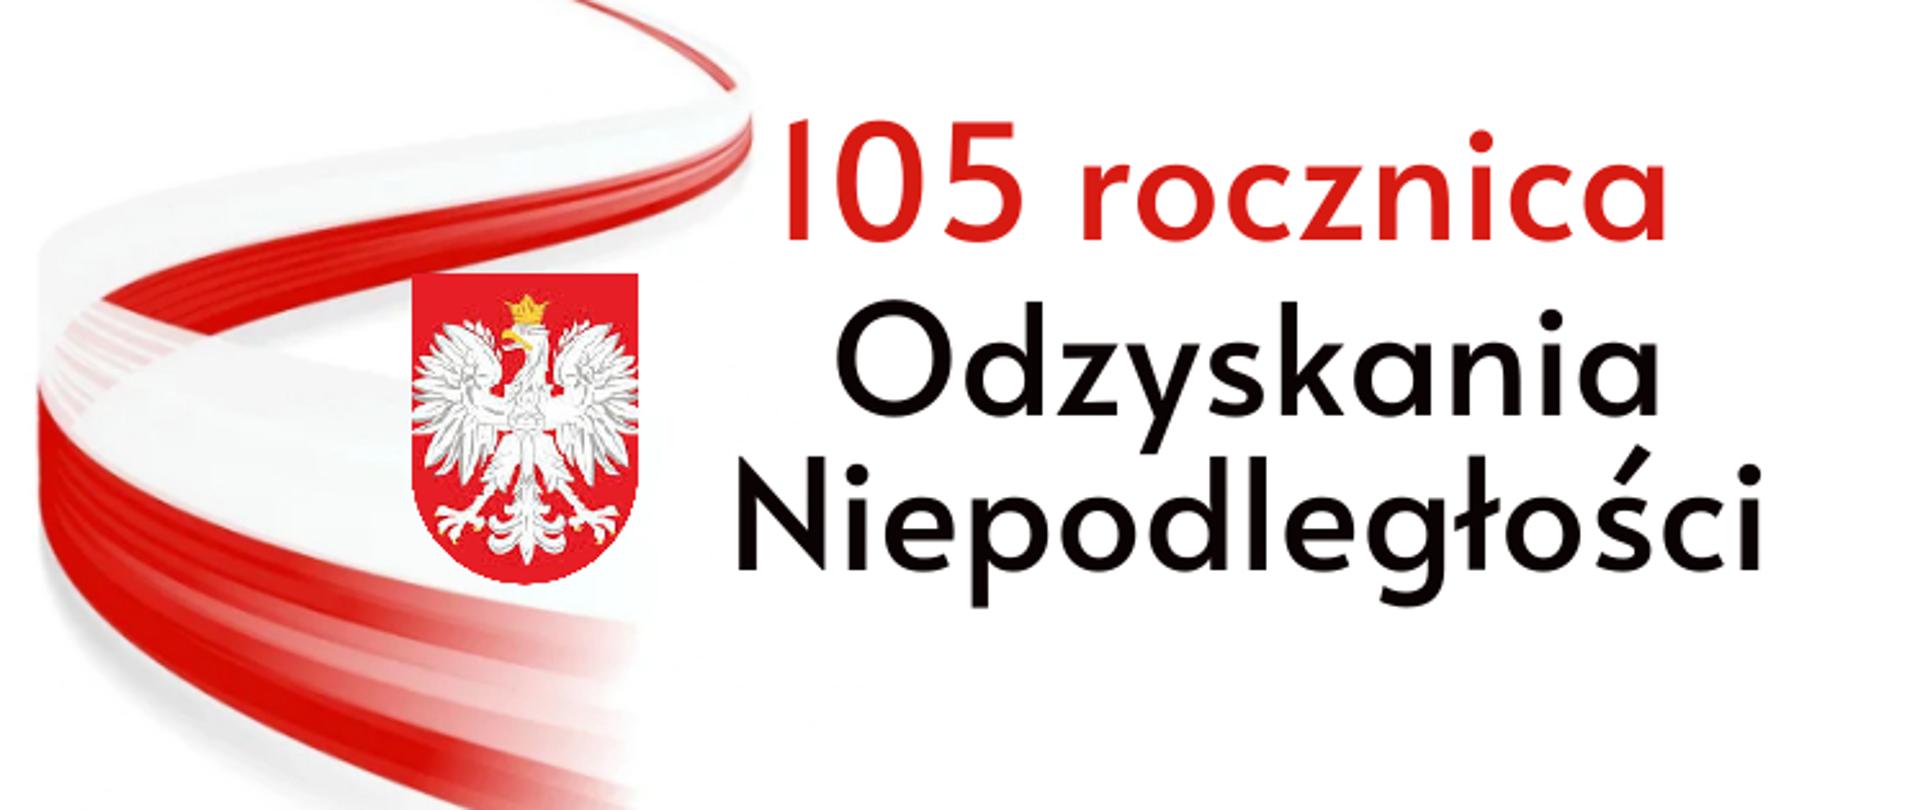 grafika prezentuje na białym tle z lewej strony wstęgę biało- czerwoną, na której znajduje się godło Polski. Po prawej stronie widnieje czerwony napis "105 rocznica", poniżej czarny napis "Odzyskania Niepodległości".